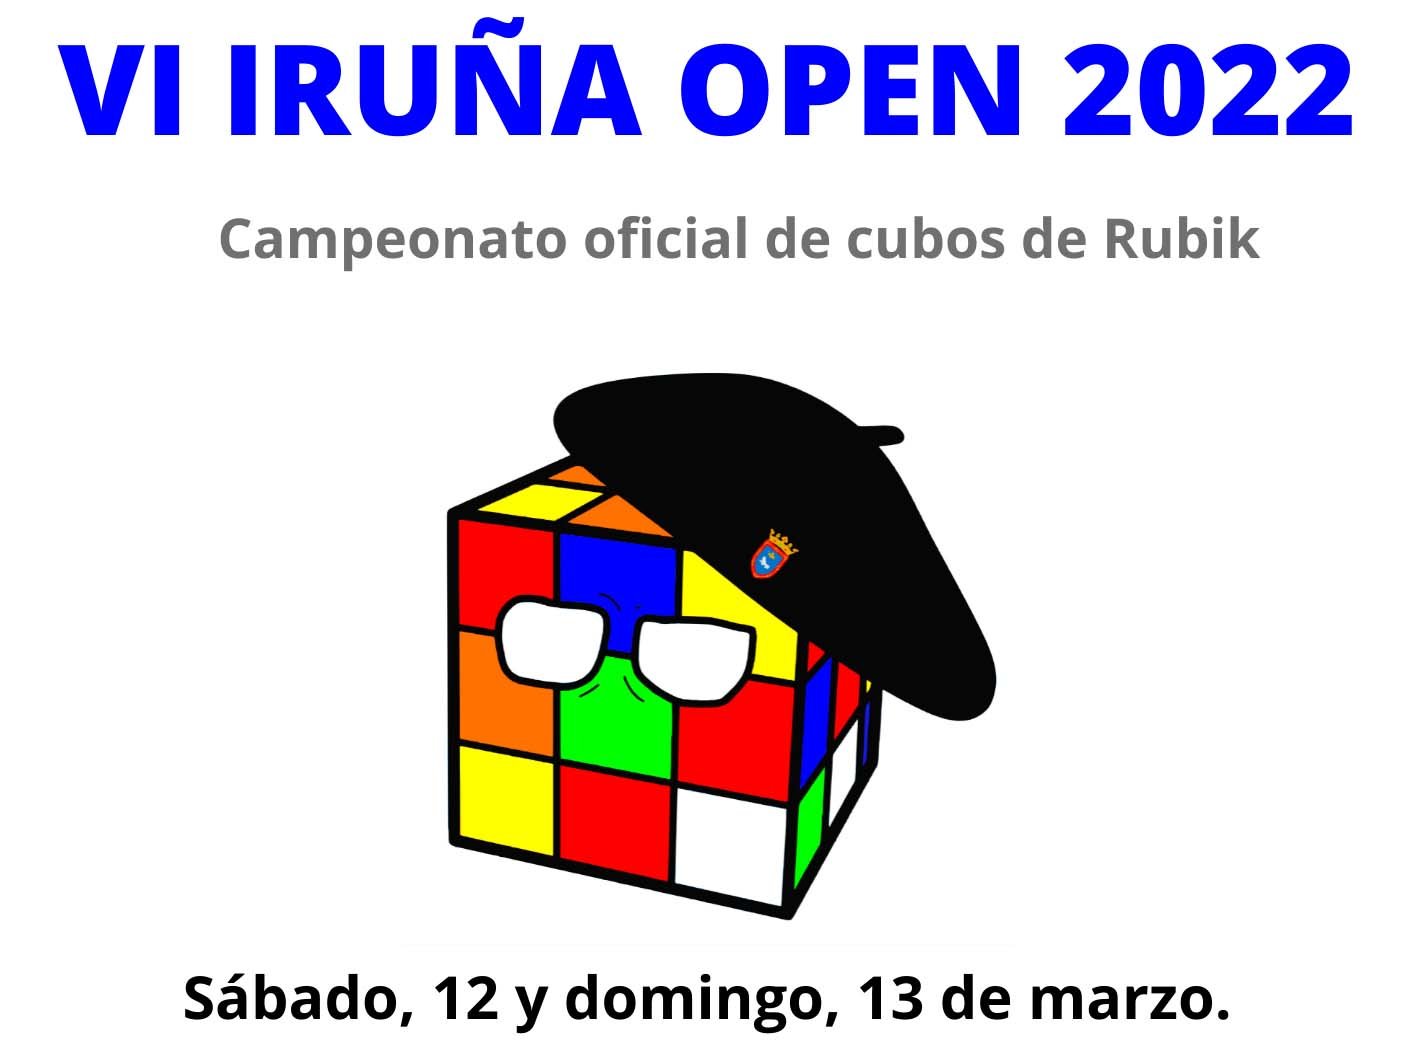 Mañana comienzan las inscripciones para la sexta edición del campeonato oficial de cubos de Rubik Iruña Open que acogerá la Casa de la Juventud los días 12 y 13 de marzo